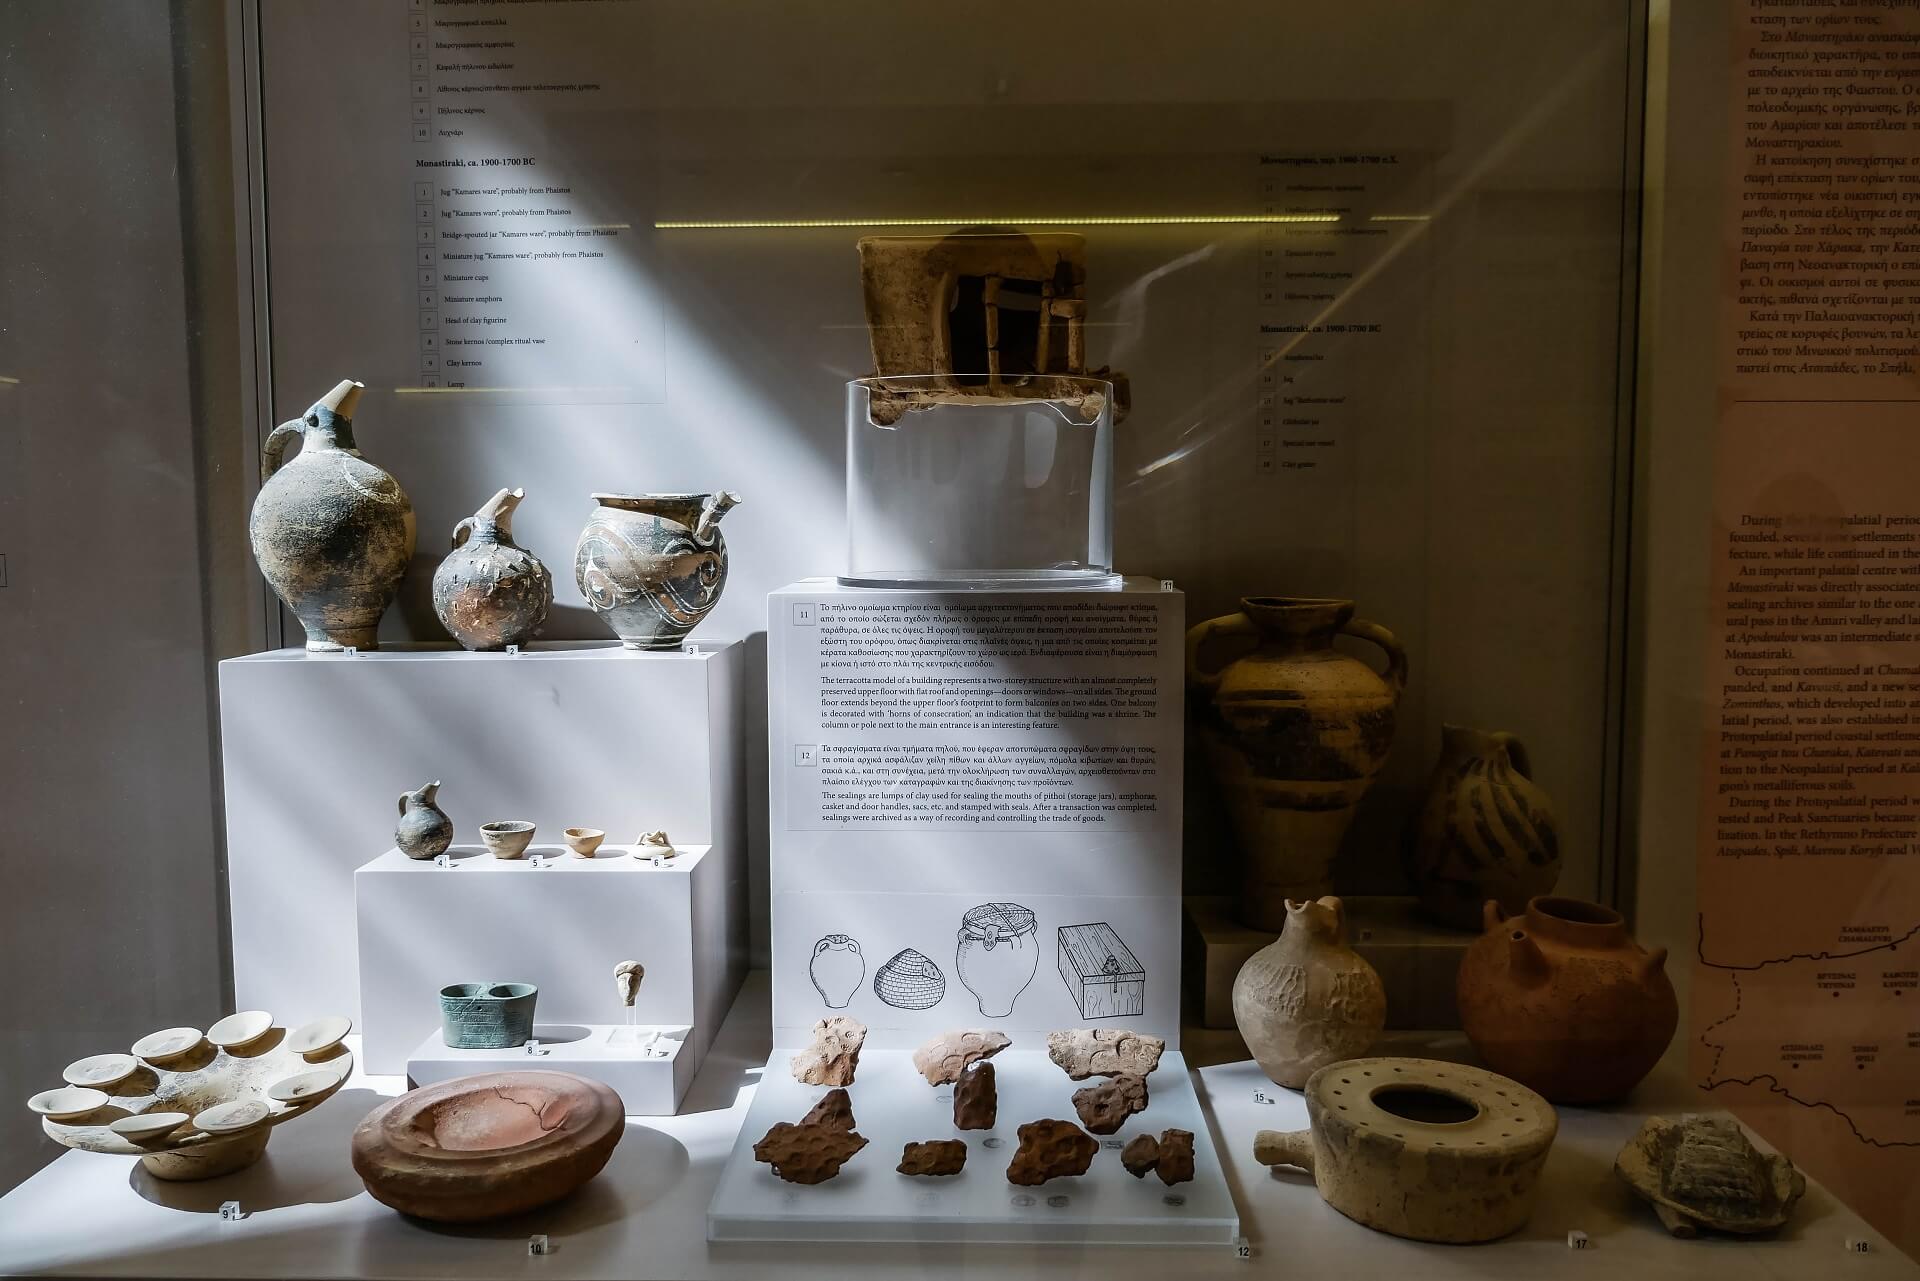 Archaeological Museum of Rethymno Crete - allincrete.com